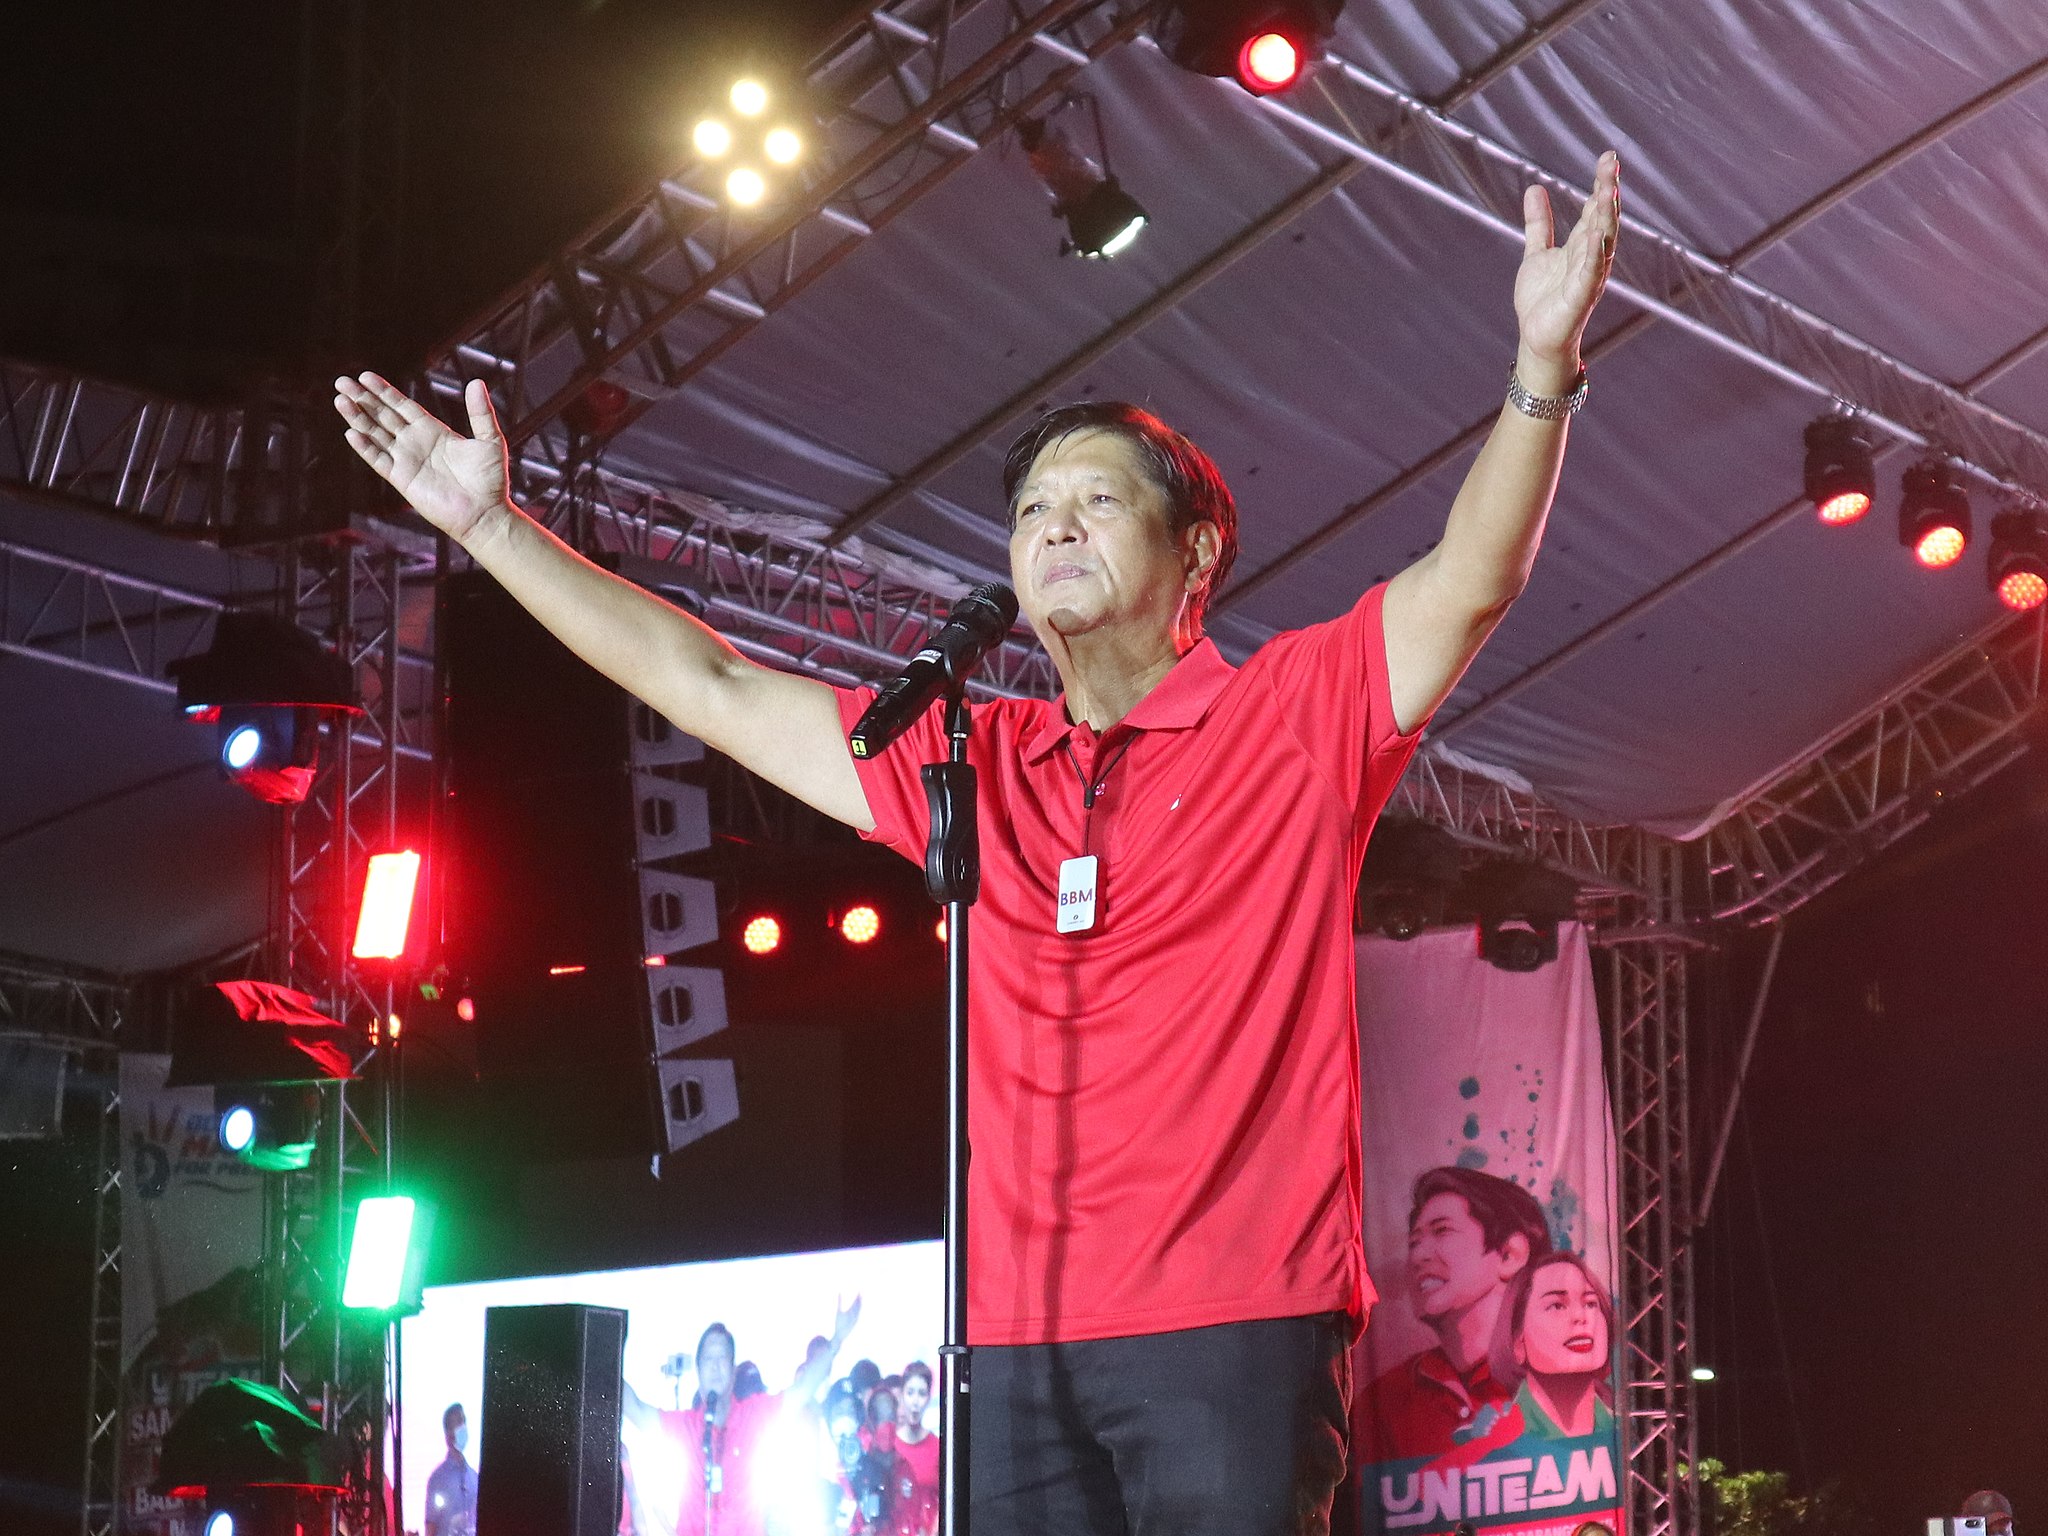 Der neue Präsident der Philippinen: Marcos Jr. steuert auf eine außenpolitische Neuausrichtung zu